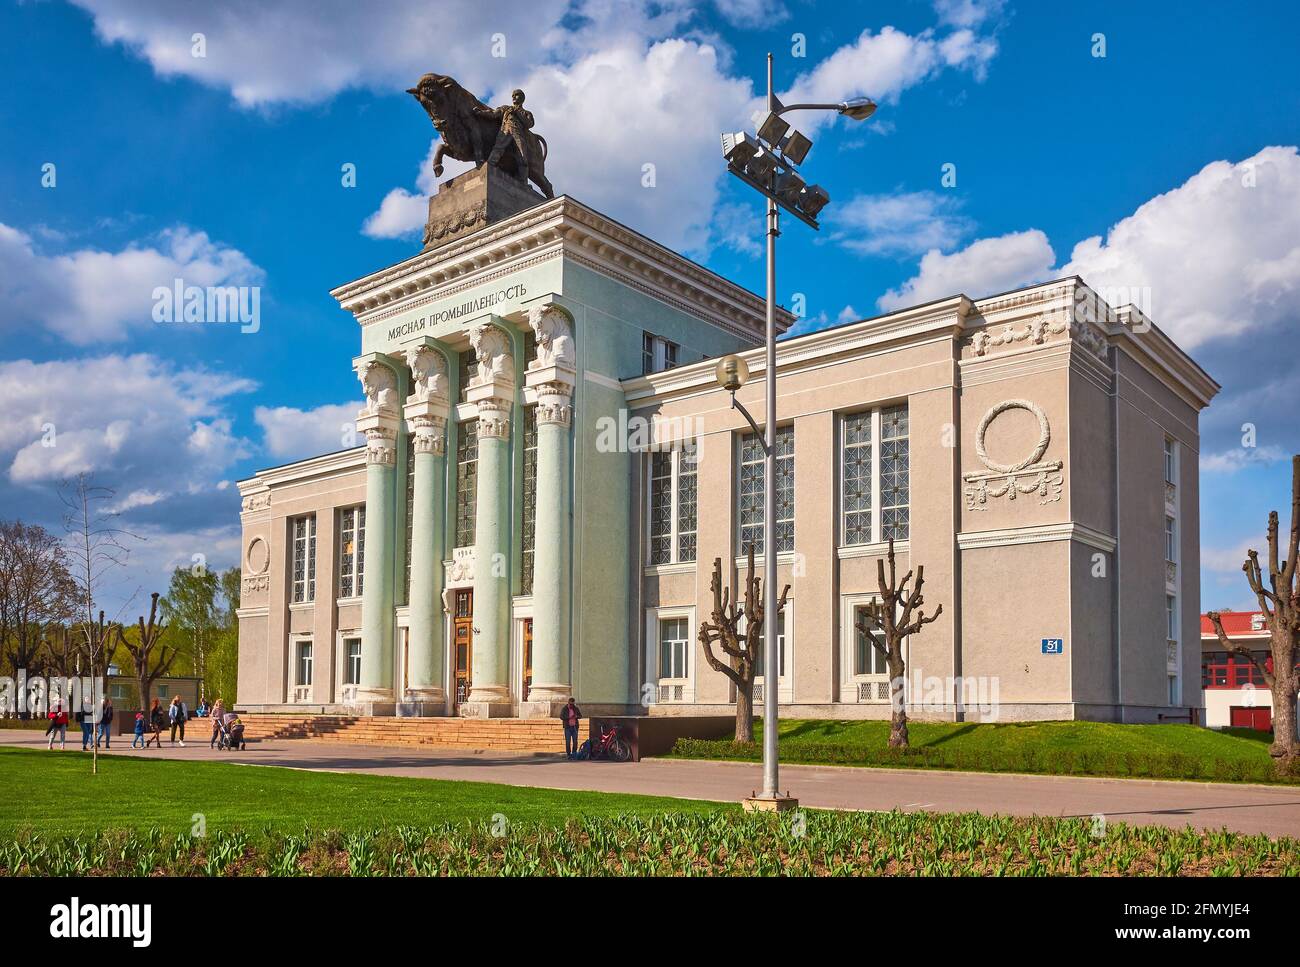 Mostra di realizzazioni della National Economy, Carne Industry Pavilion, costruito nello stile di Stalin Empire nel 1951-1954, oggetto di herit culturale Foto Stock